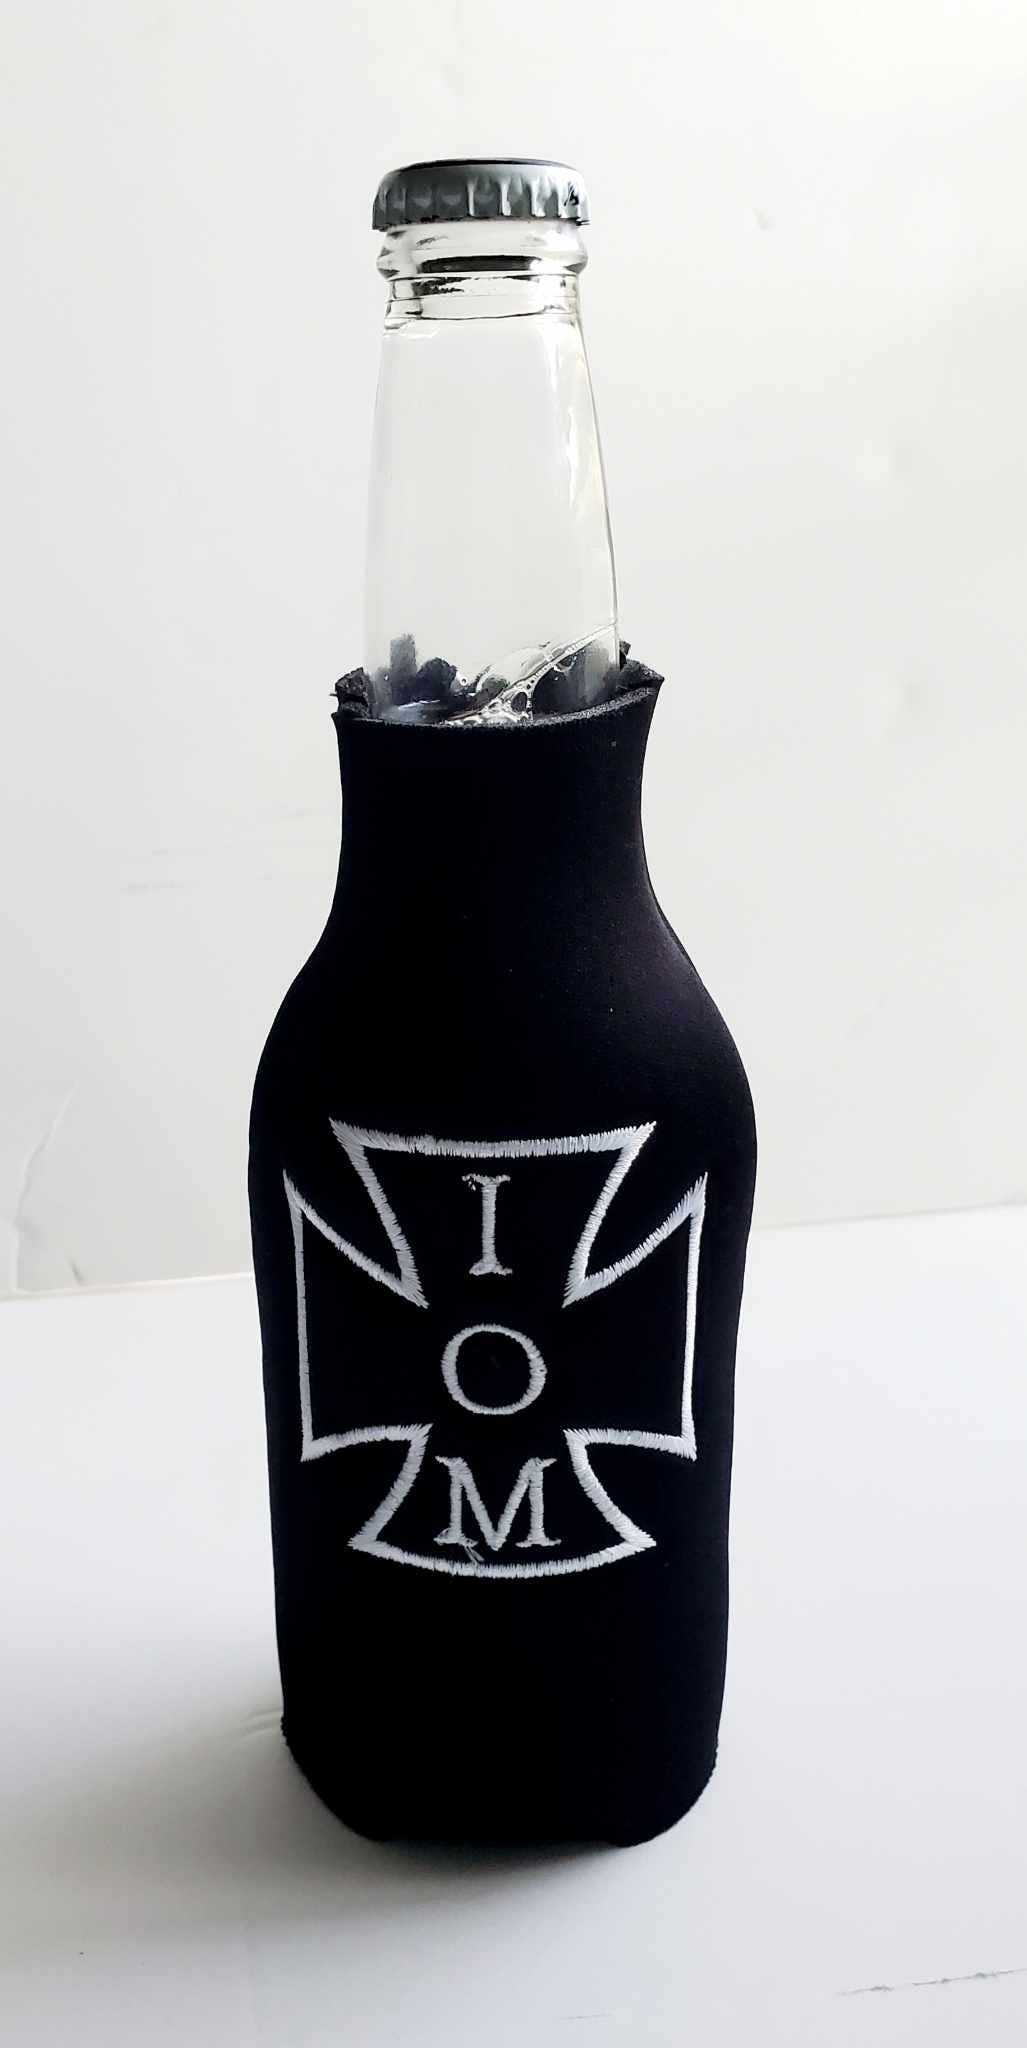 Iron Order Maiden Bottle Koozie